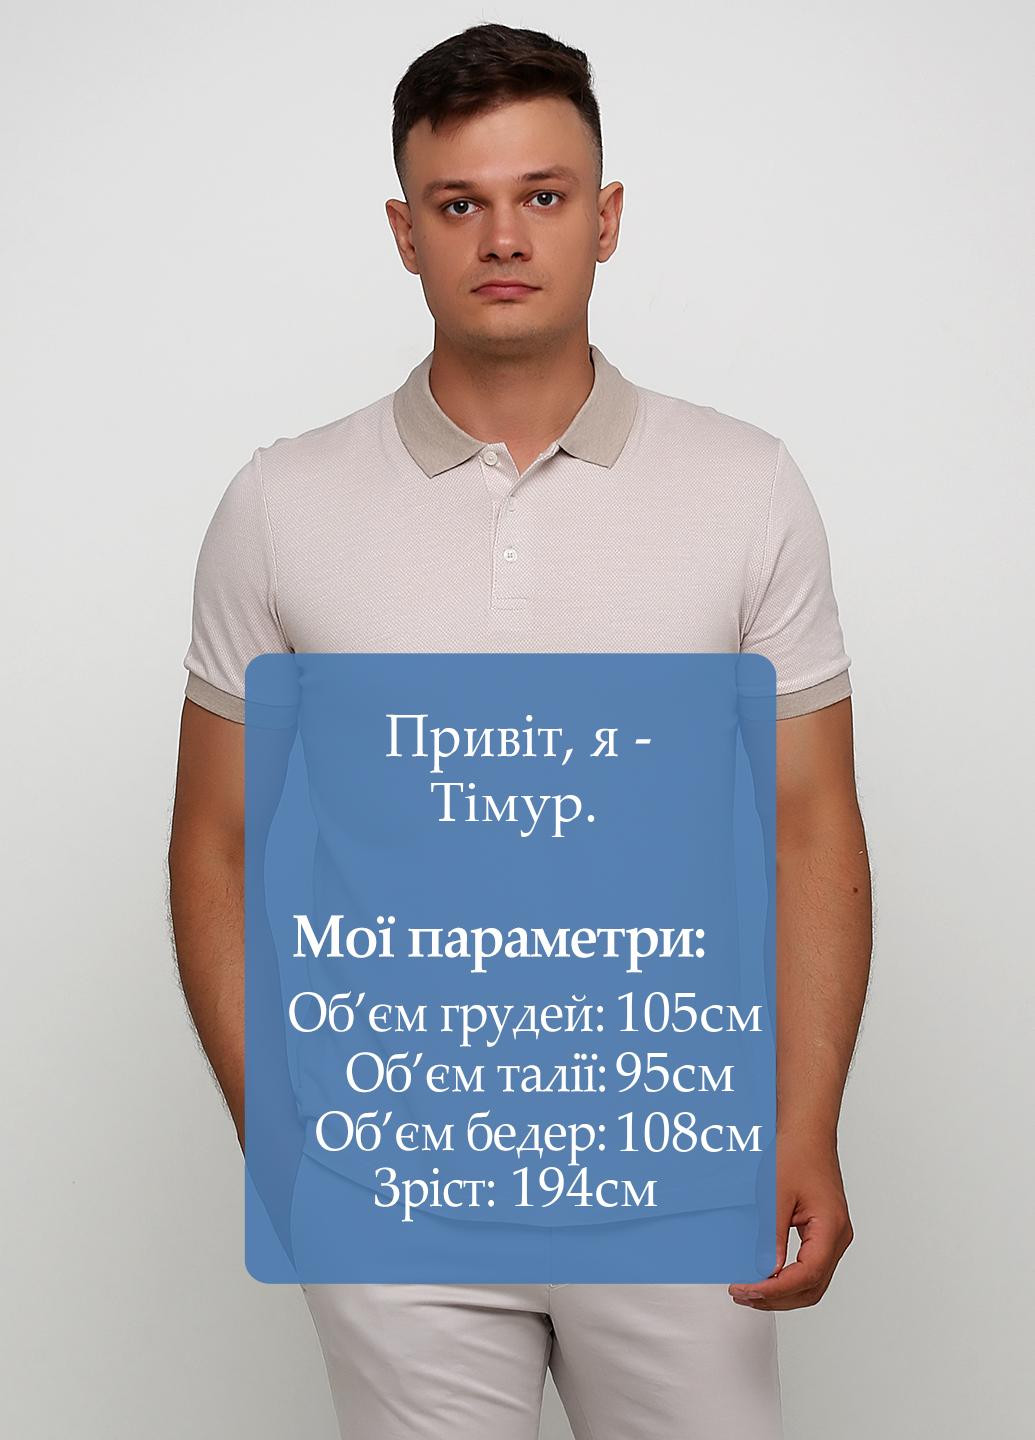 Бежевая футболка-поло для мужчин Network однотонная